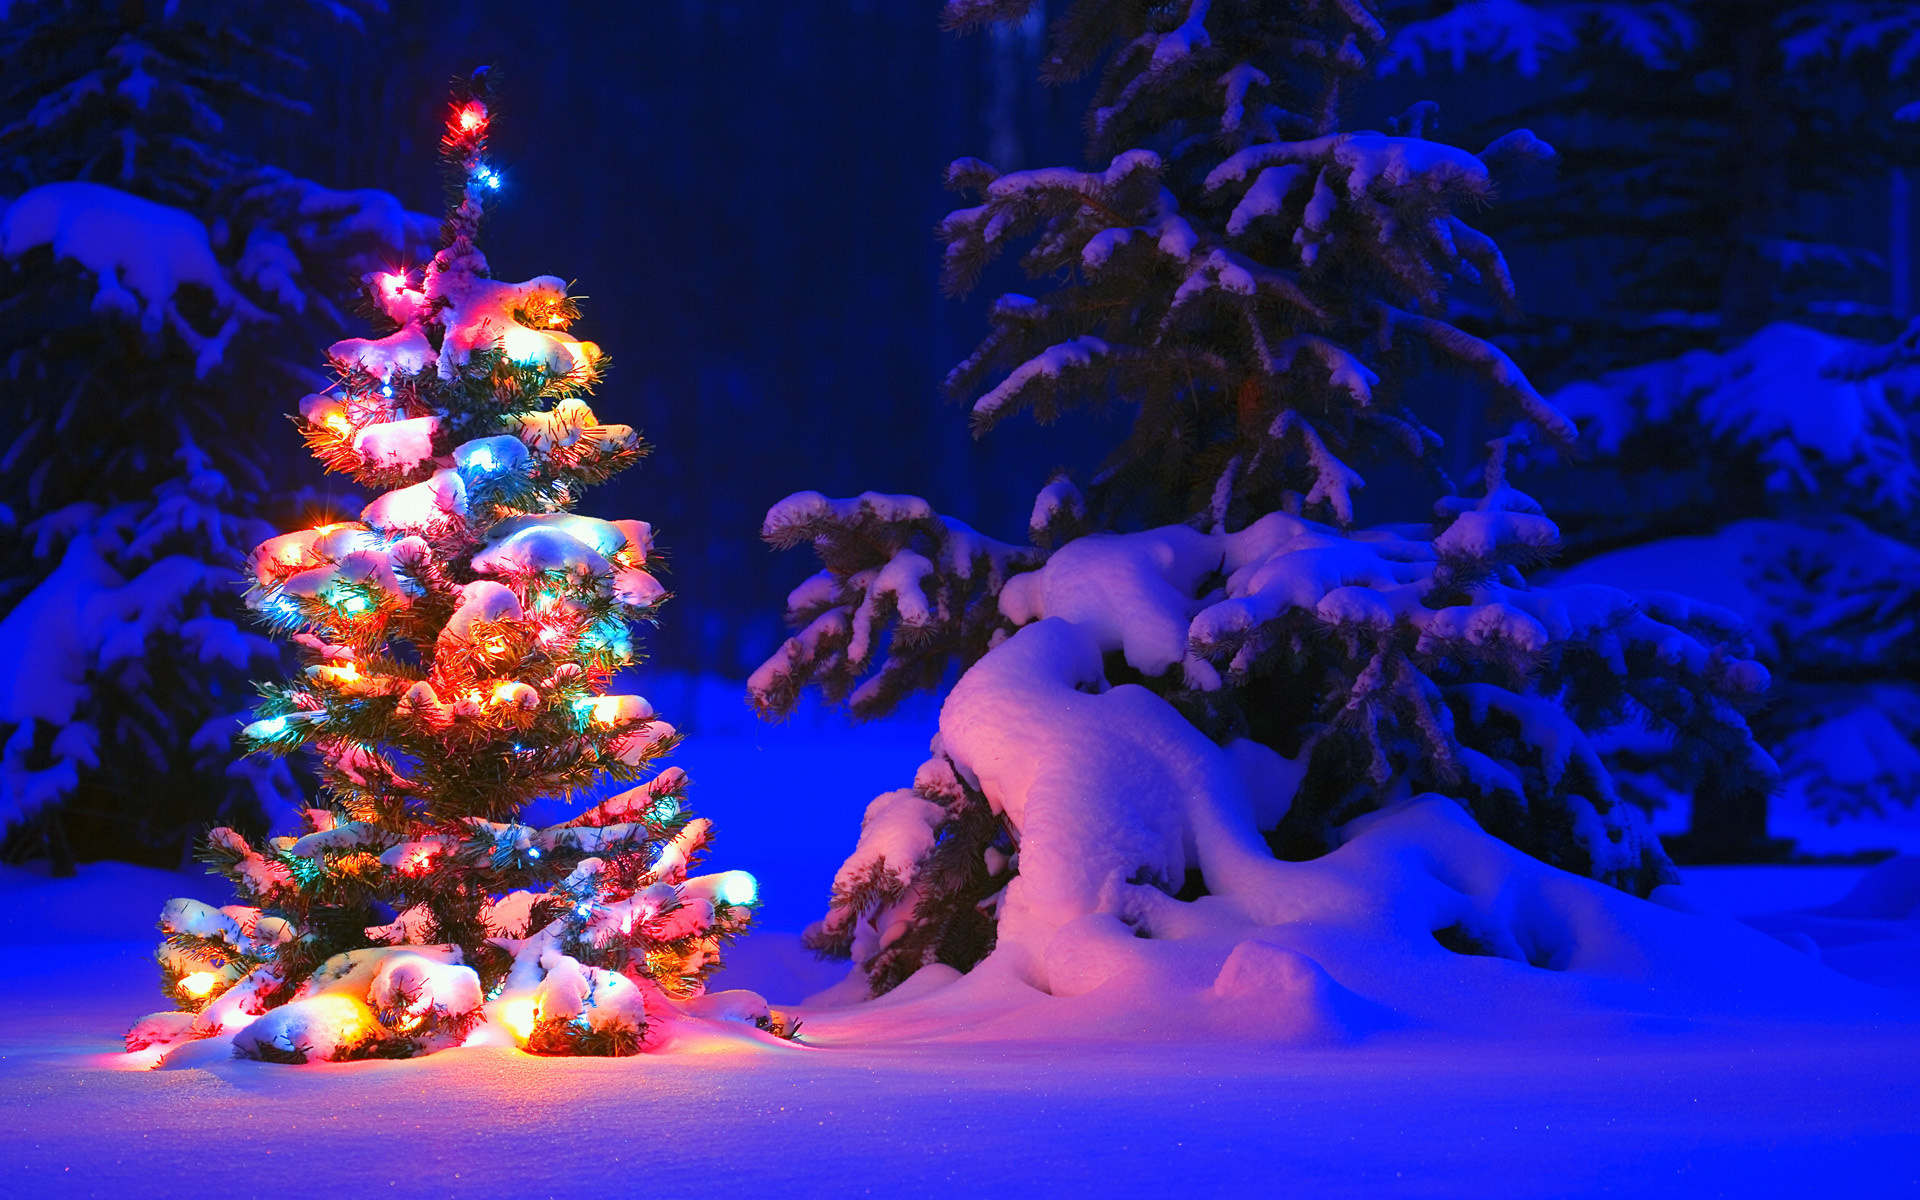 Скачать обои бесплатно Зима, Ночь, Снег, Лес, Дерево, Рождество, Рождественская Елка, Праздничные картинка на рабочий стол ПК